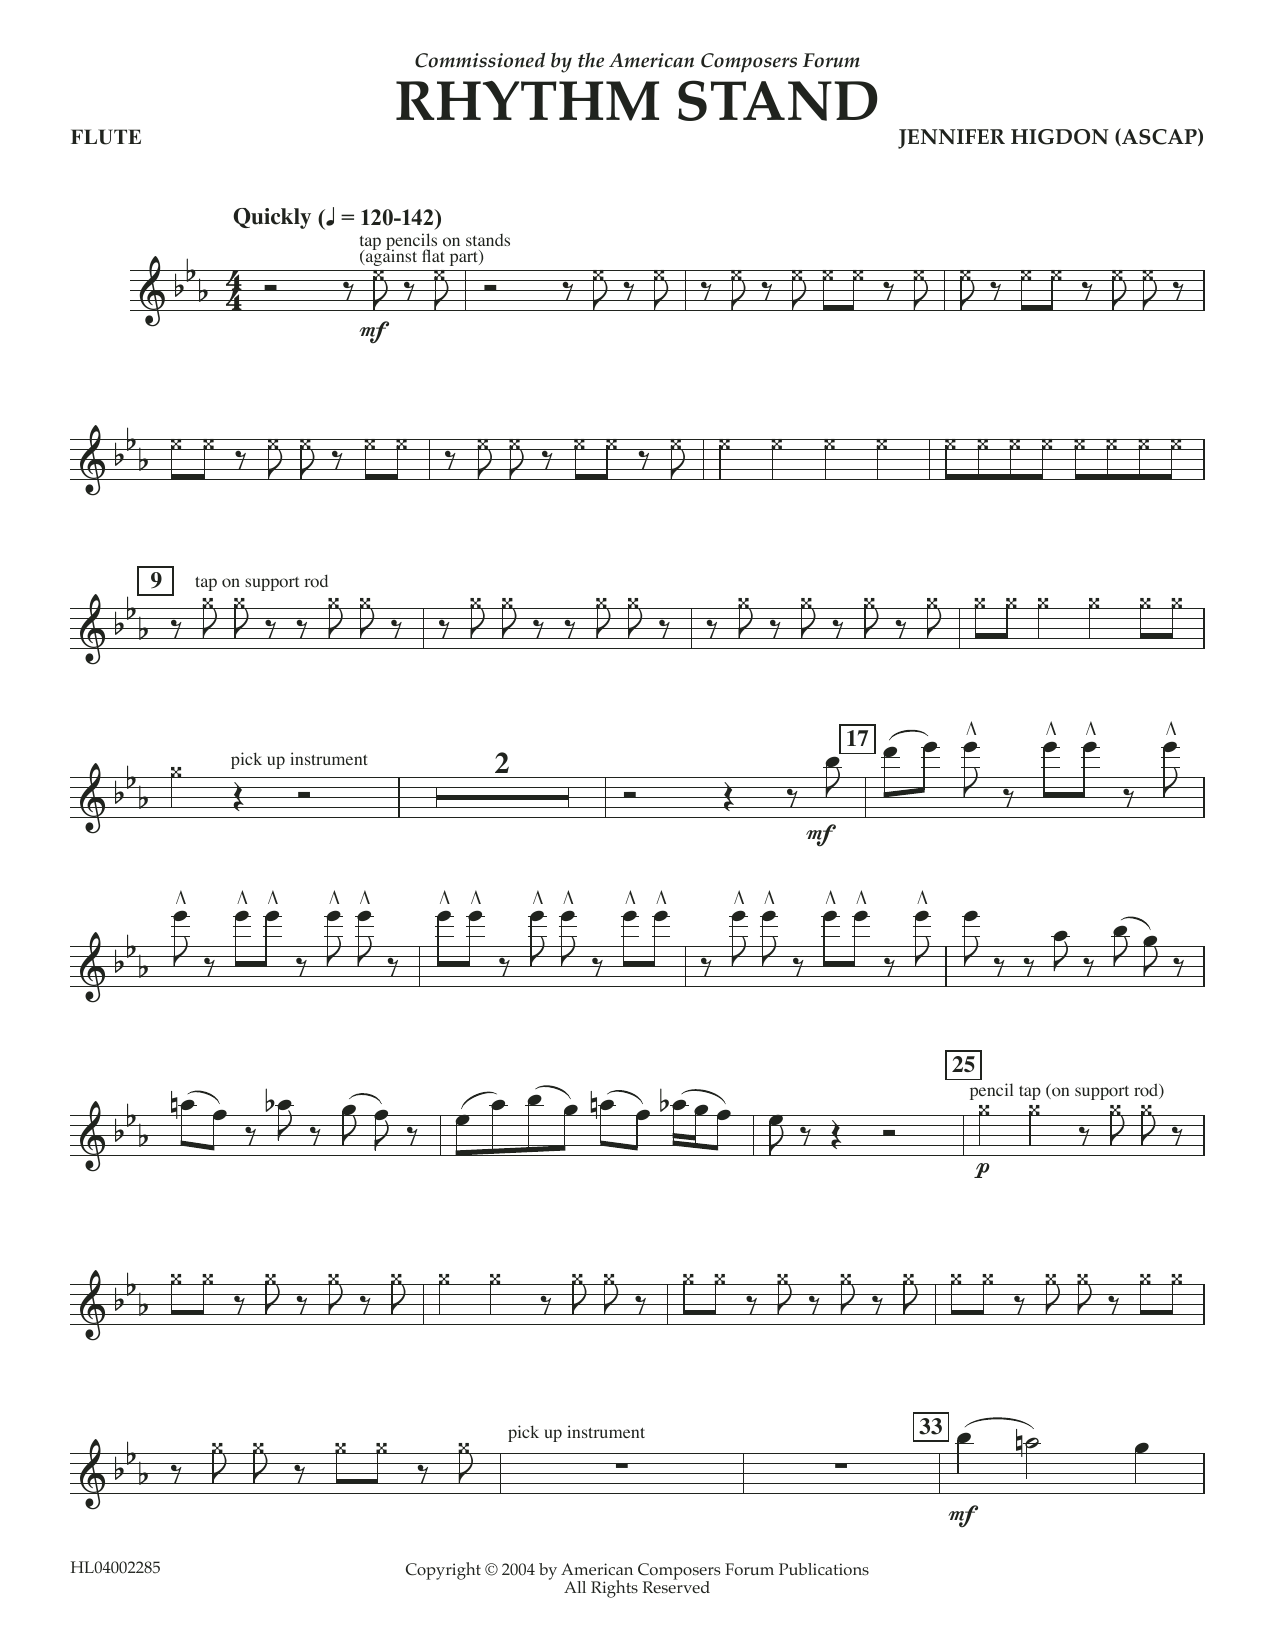 Jennifer Higdon Rhythm Stand - Flute Sheet Music Notes & Chords for Concert Band - Download or Print PDF